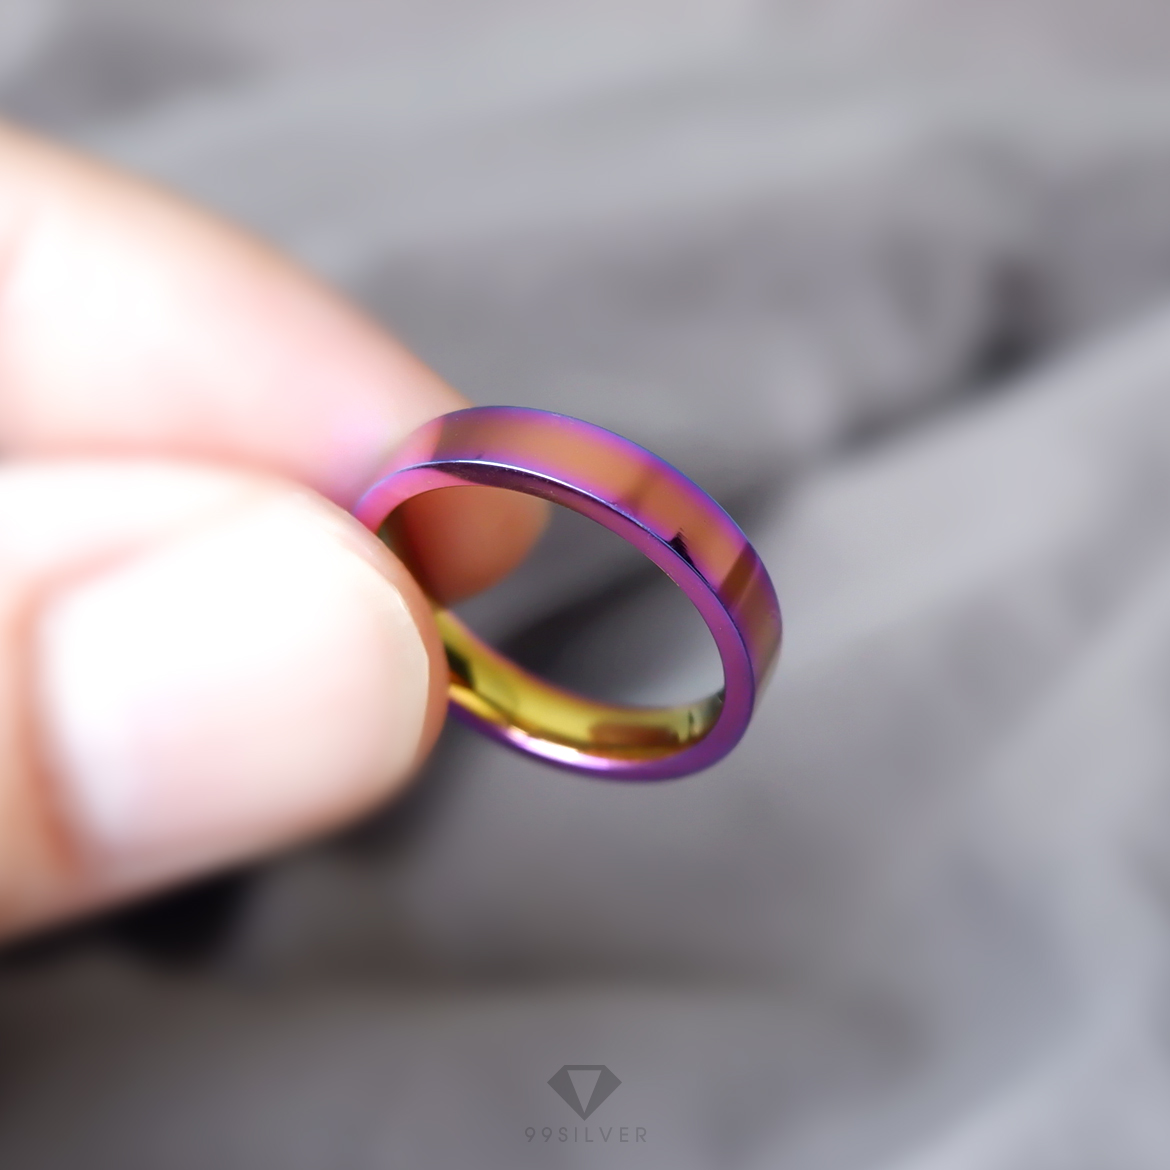 แหวนสแตนเลสไทเทเนี่ยมแท้ หน้ากว้าง 4 มิลลิเมตร ผิวเงาเรียบ ไดร์ฟสีรุ้งไทเท